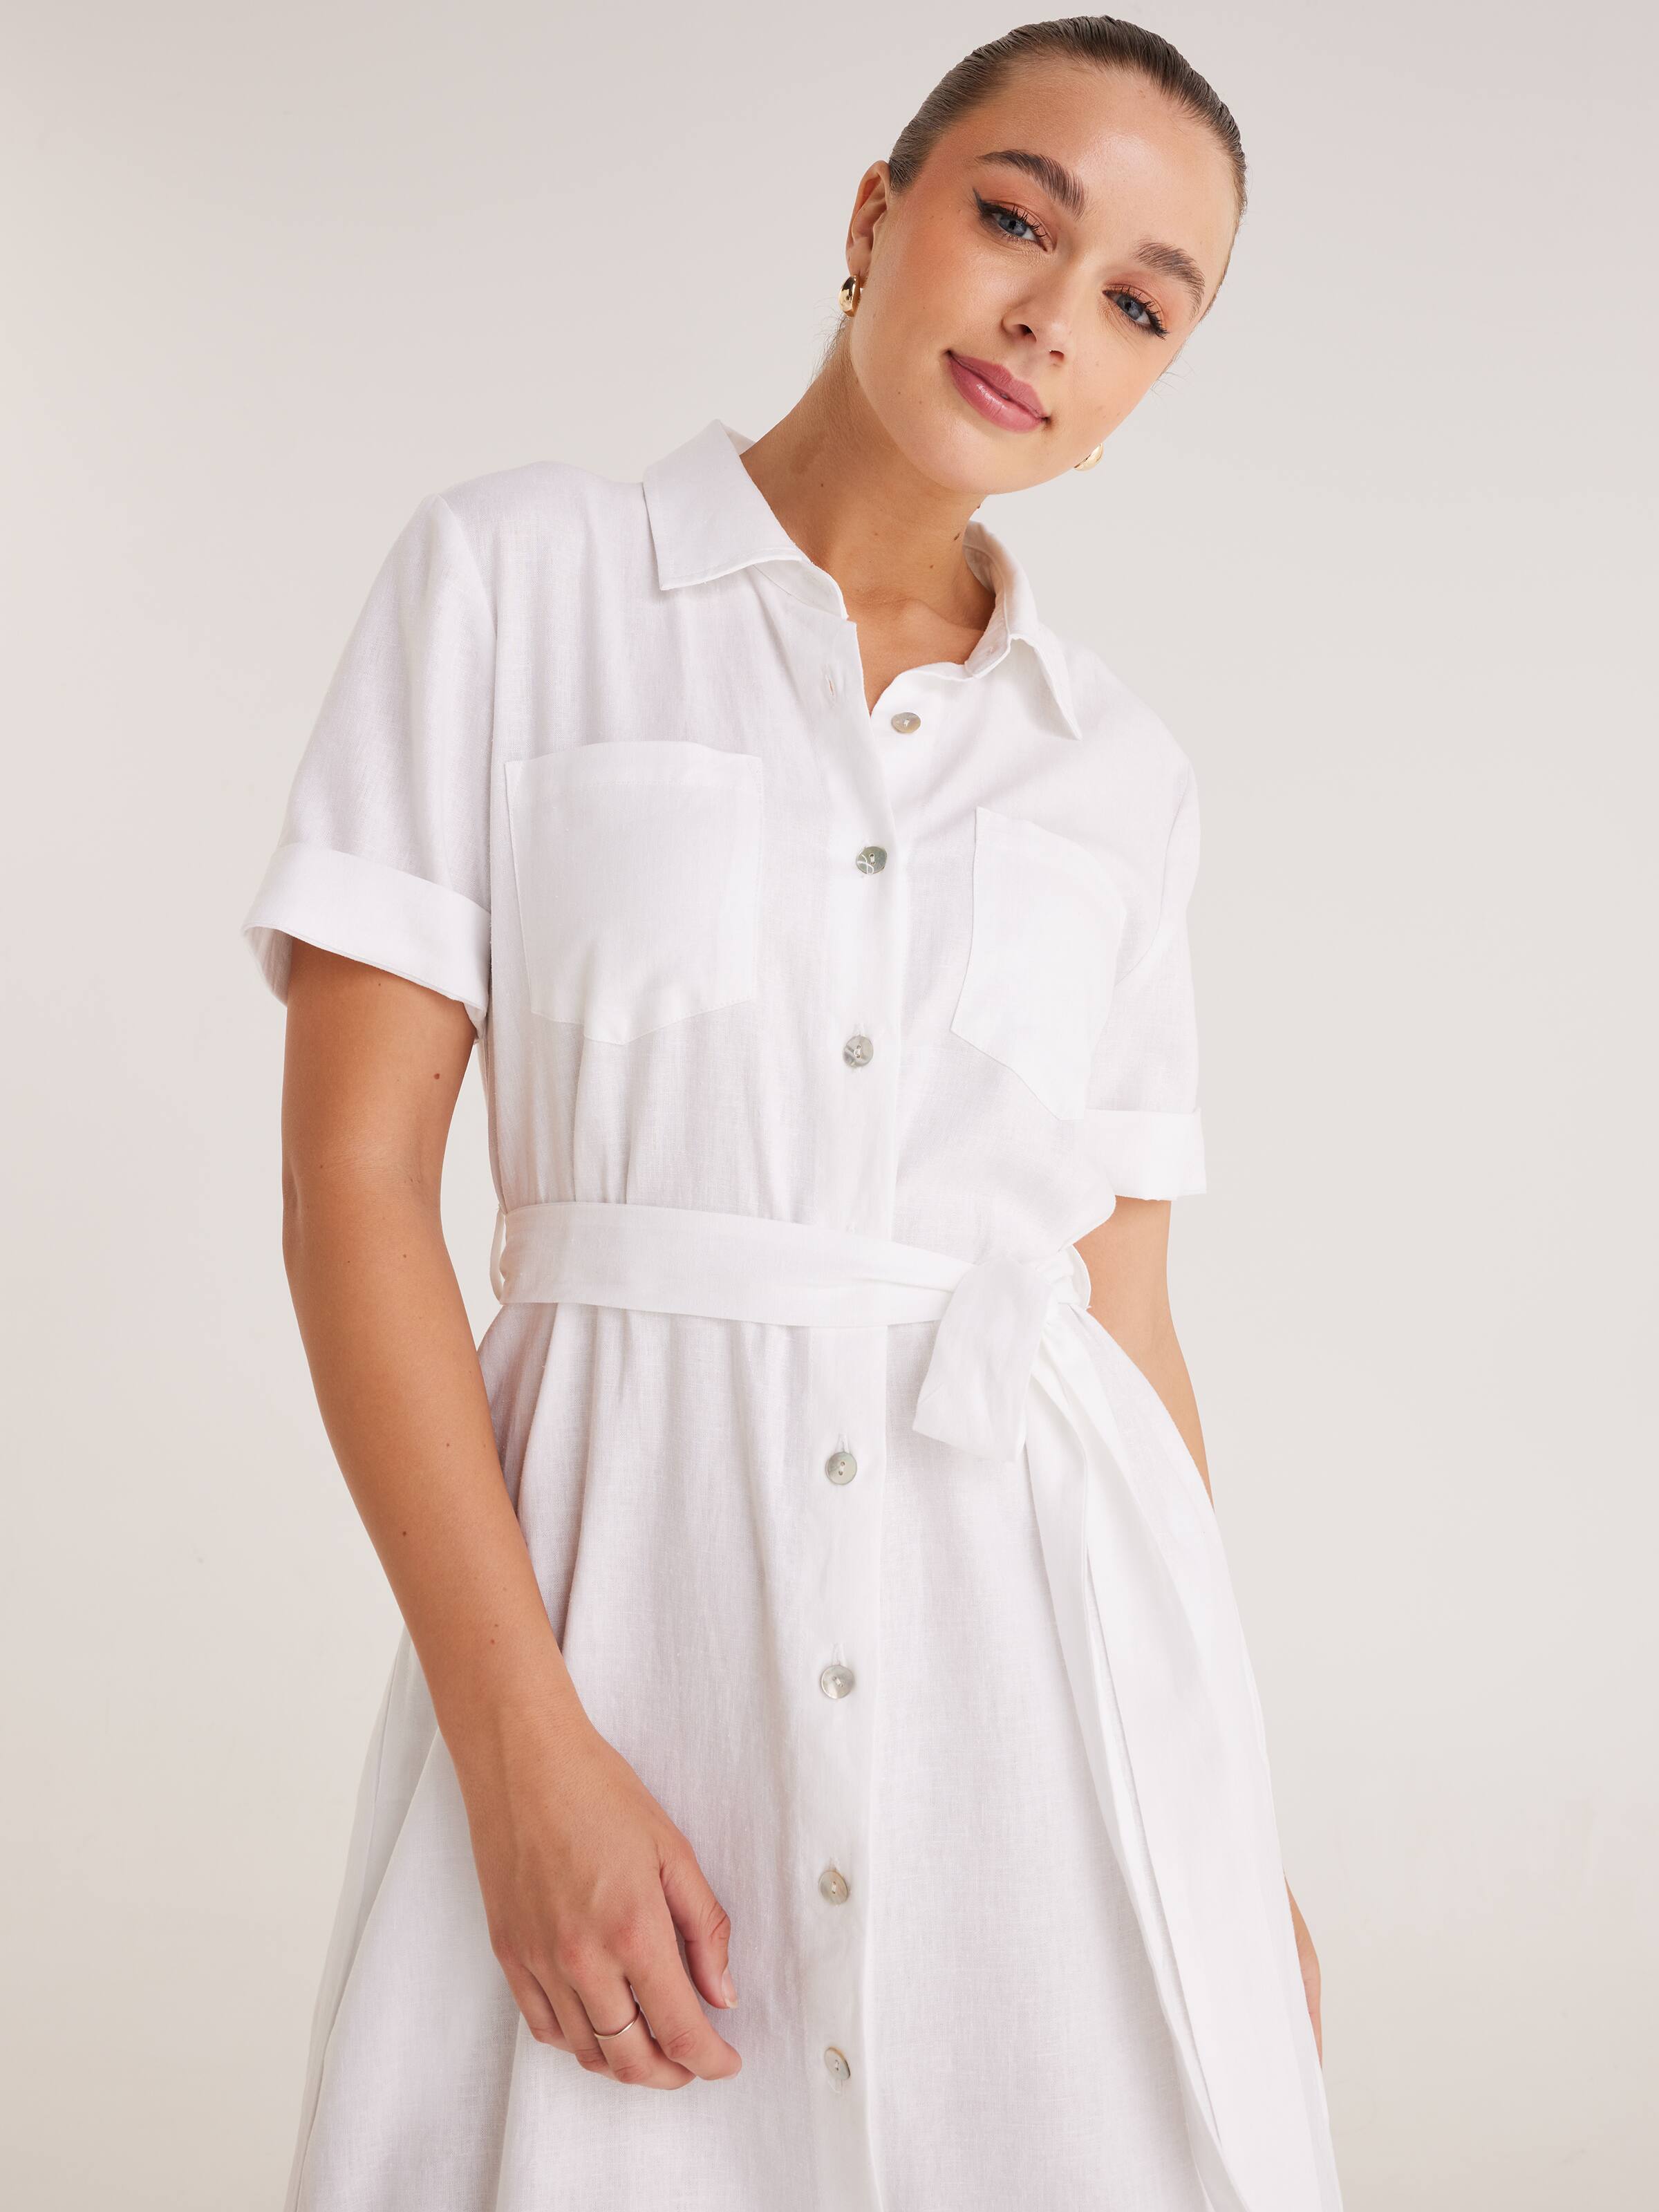 white shirt dresses for women